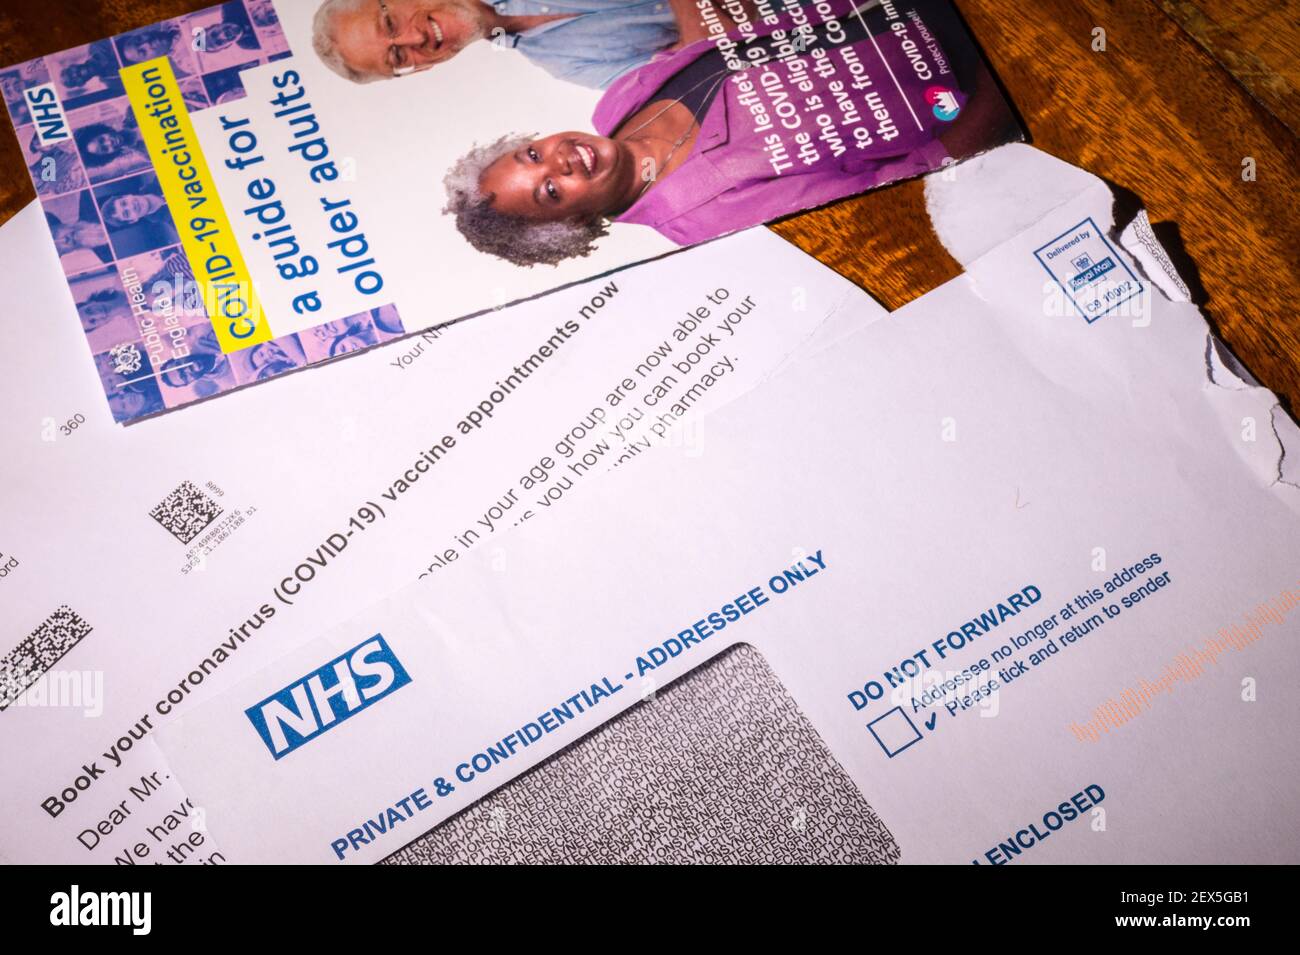 Carta de invitación del NHS para reservar una vacuna contra el coronavirus para una persona mayor de 60 años de edad con folleto de orientación. Retocado para eliminar información personal. Foto de stock